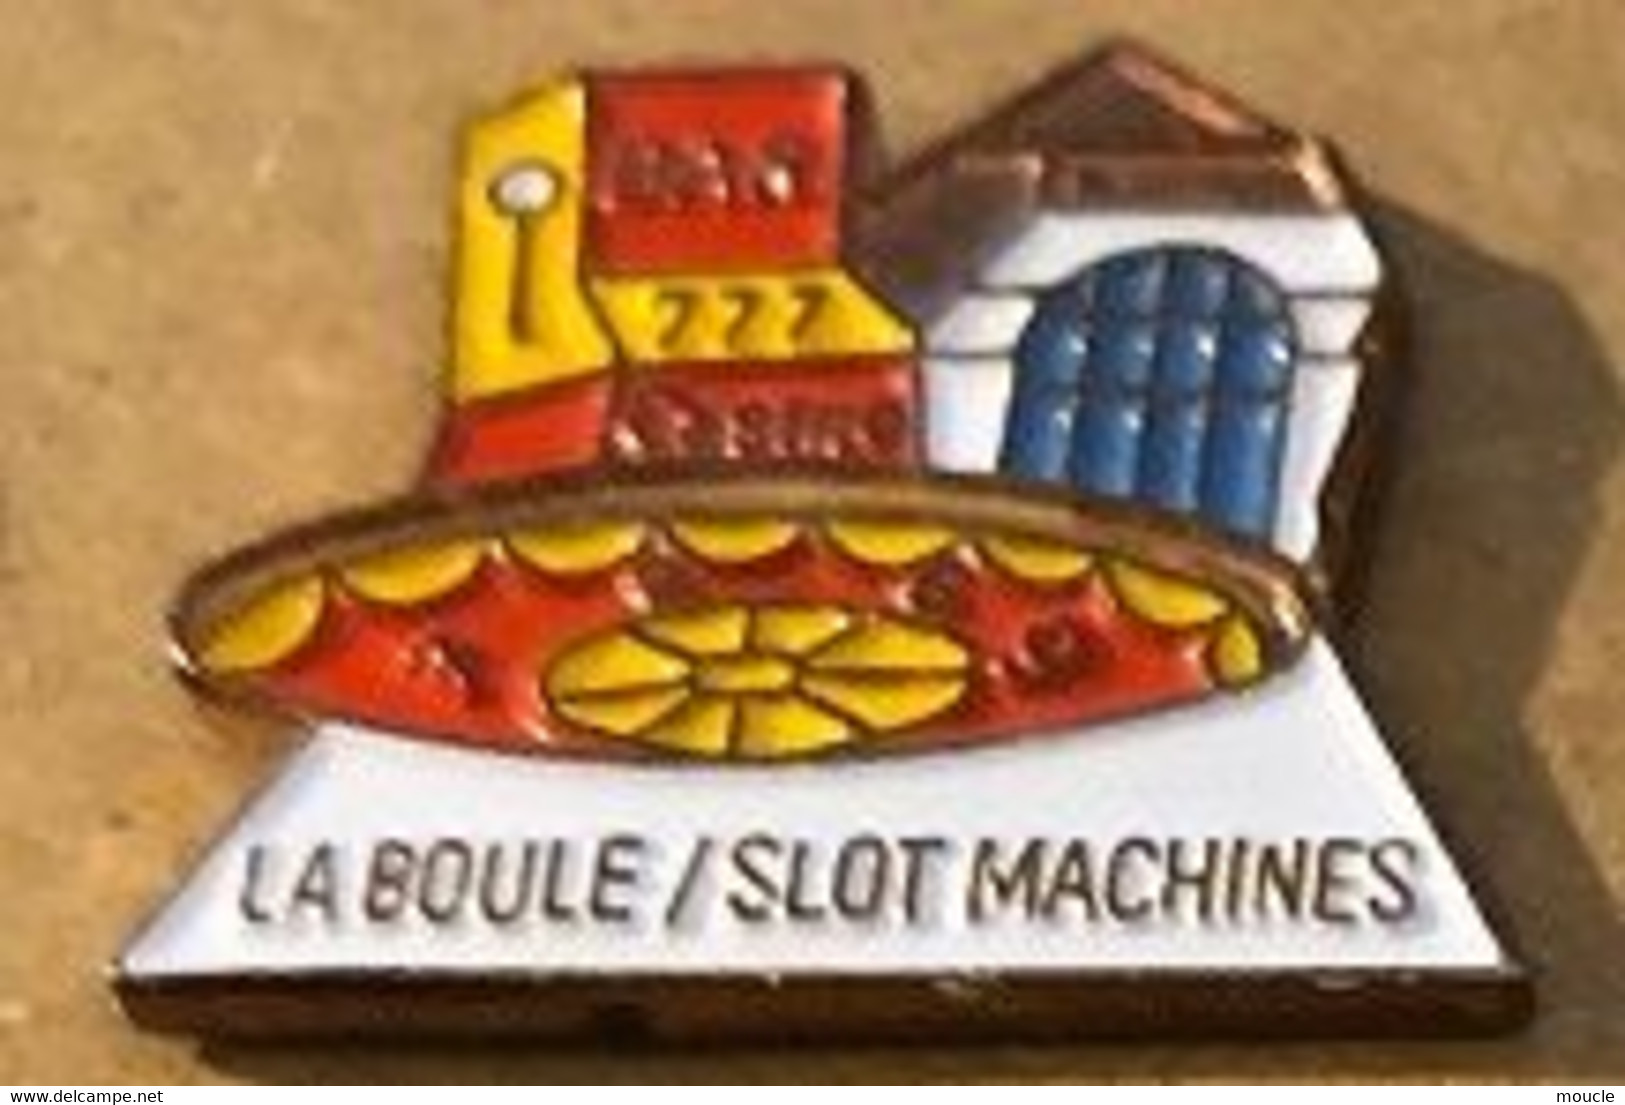 LA BOULE / SLOT MACHINES - BANDIT MANCHOT - CASINO - ROULETTE  - BAR - MACHINE A SOUS - MONEY - ARGENT - GELD -    (16) - Spelletjes